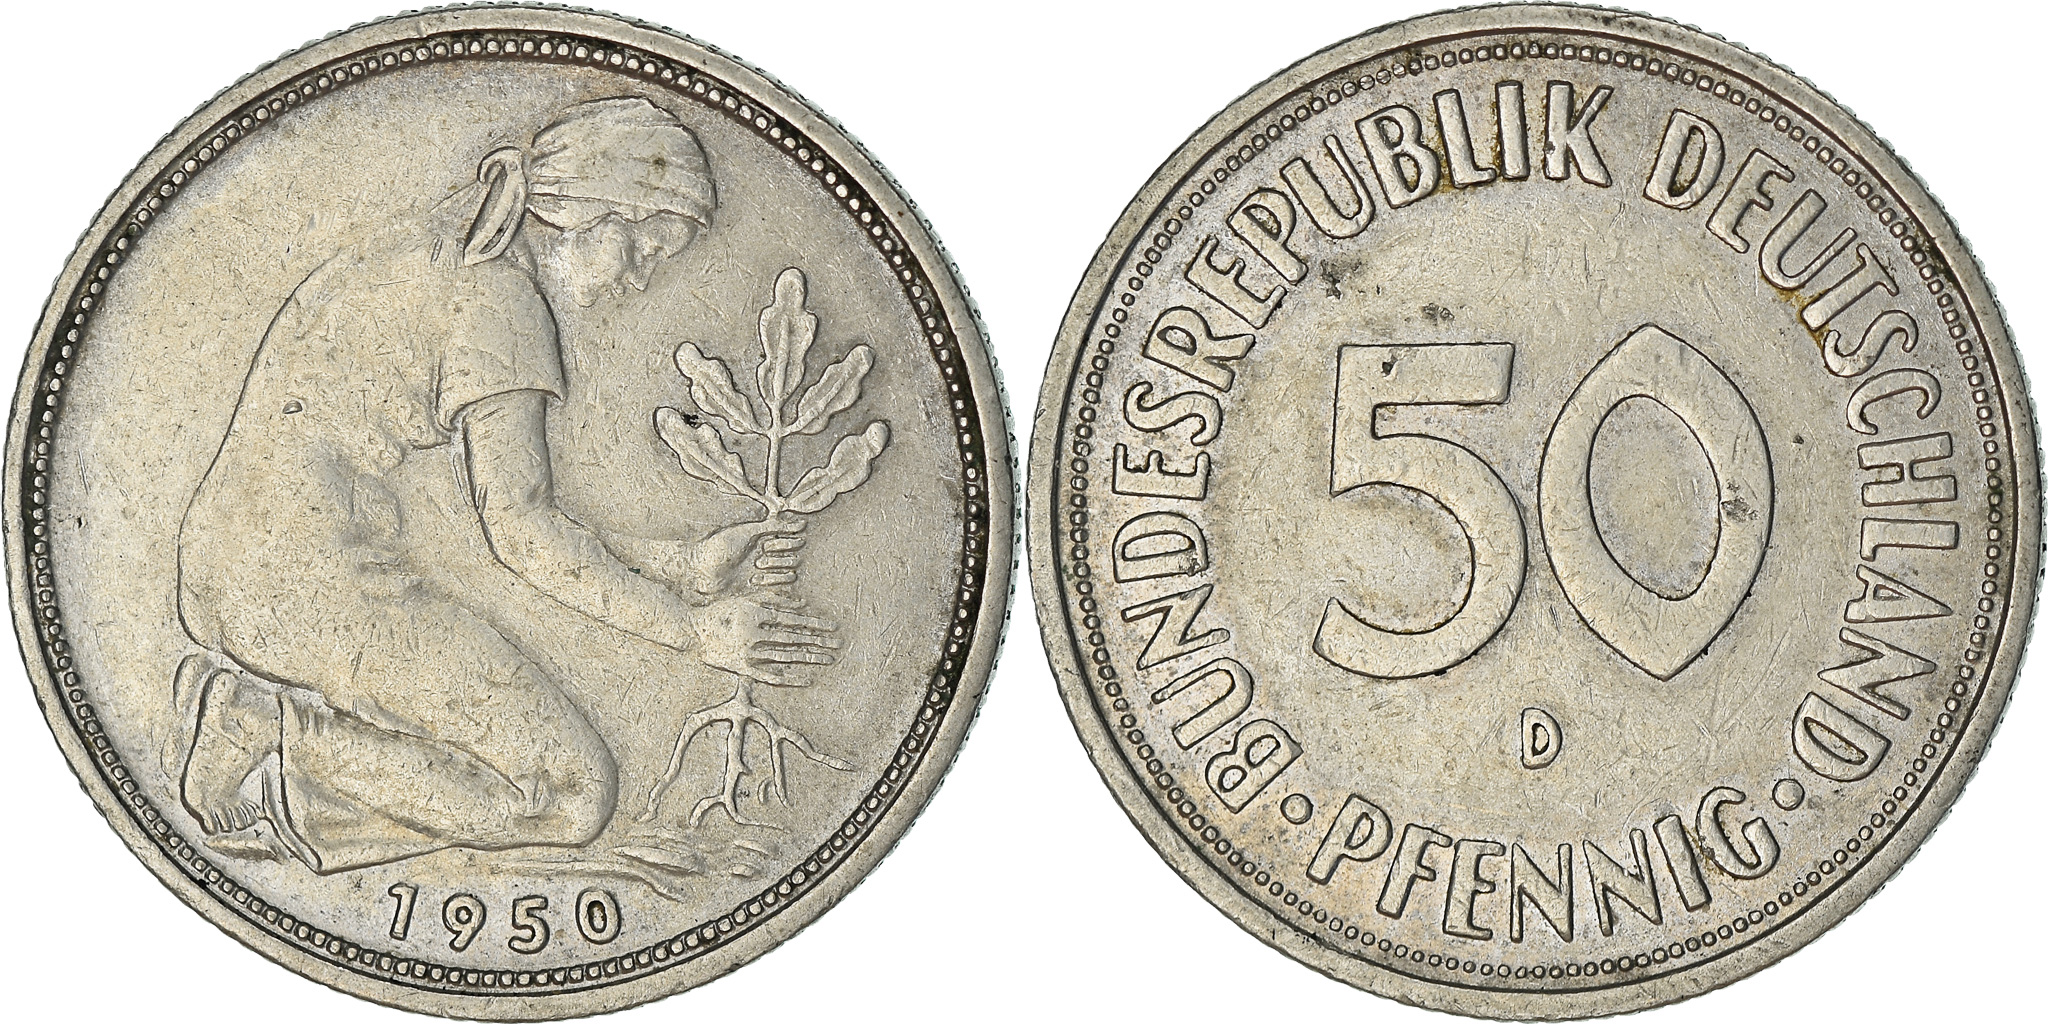 10 Pfennig 1950 D Germany Coin Bundesrepublik Deutchland Oak